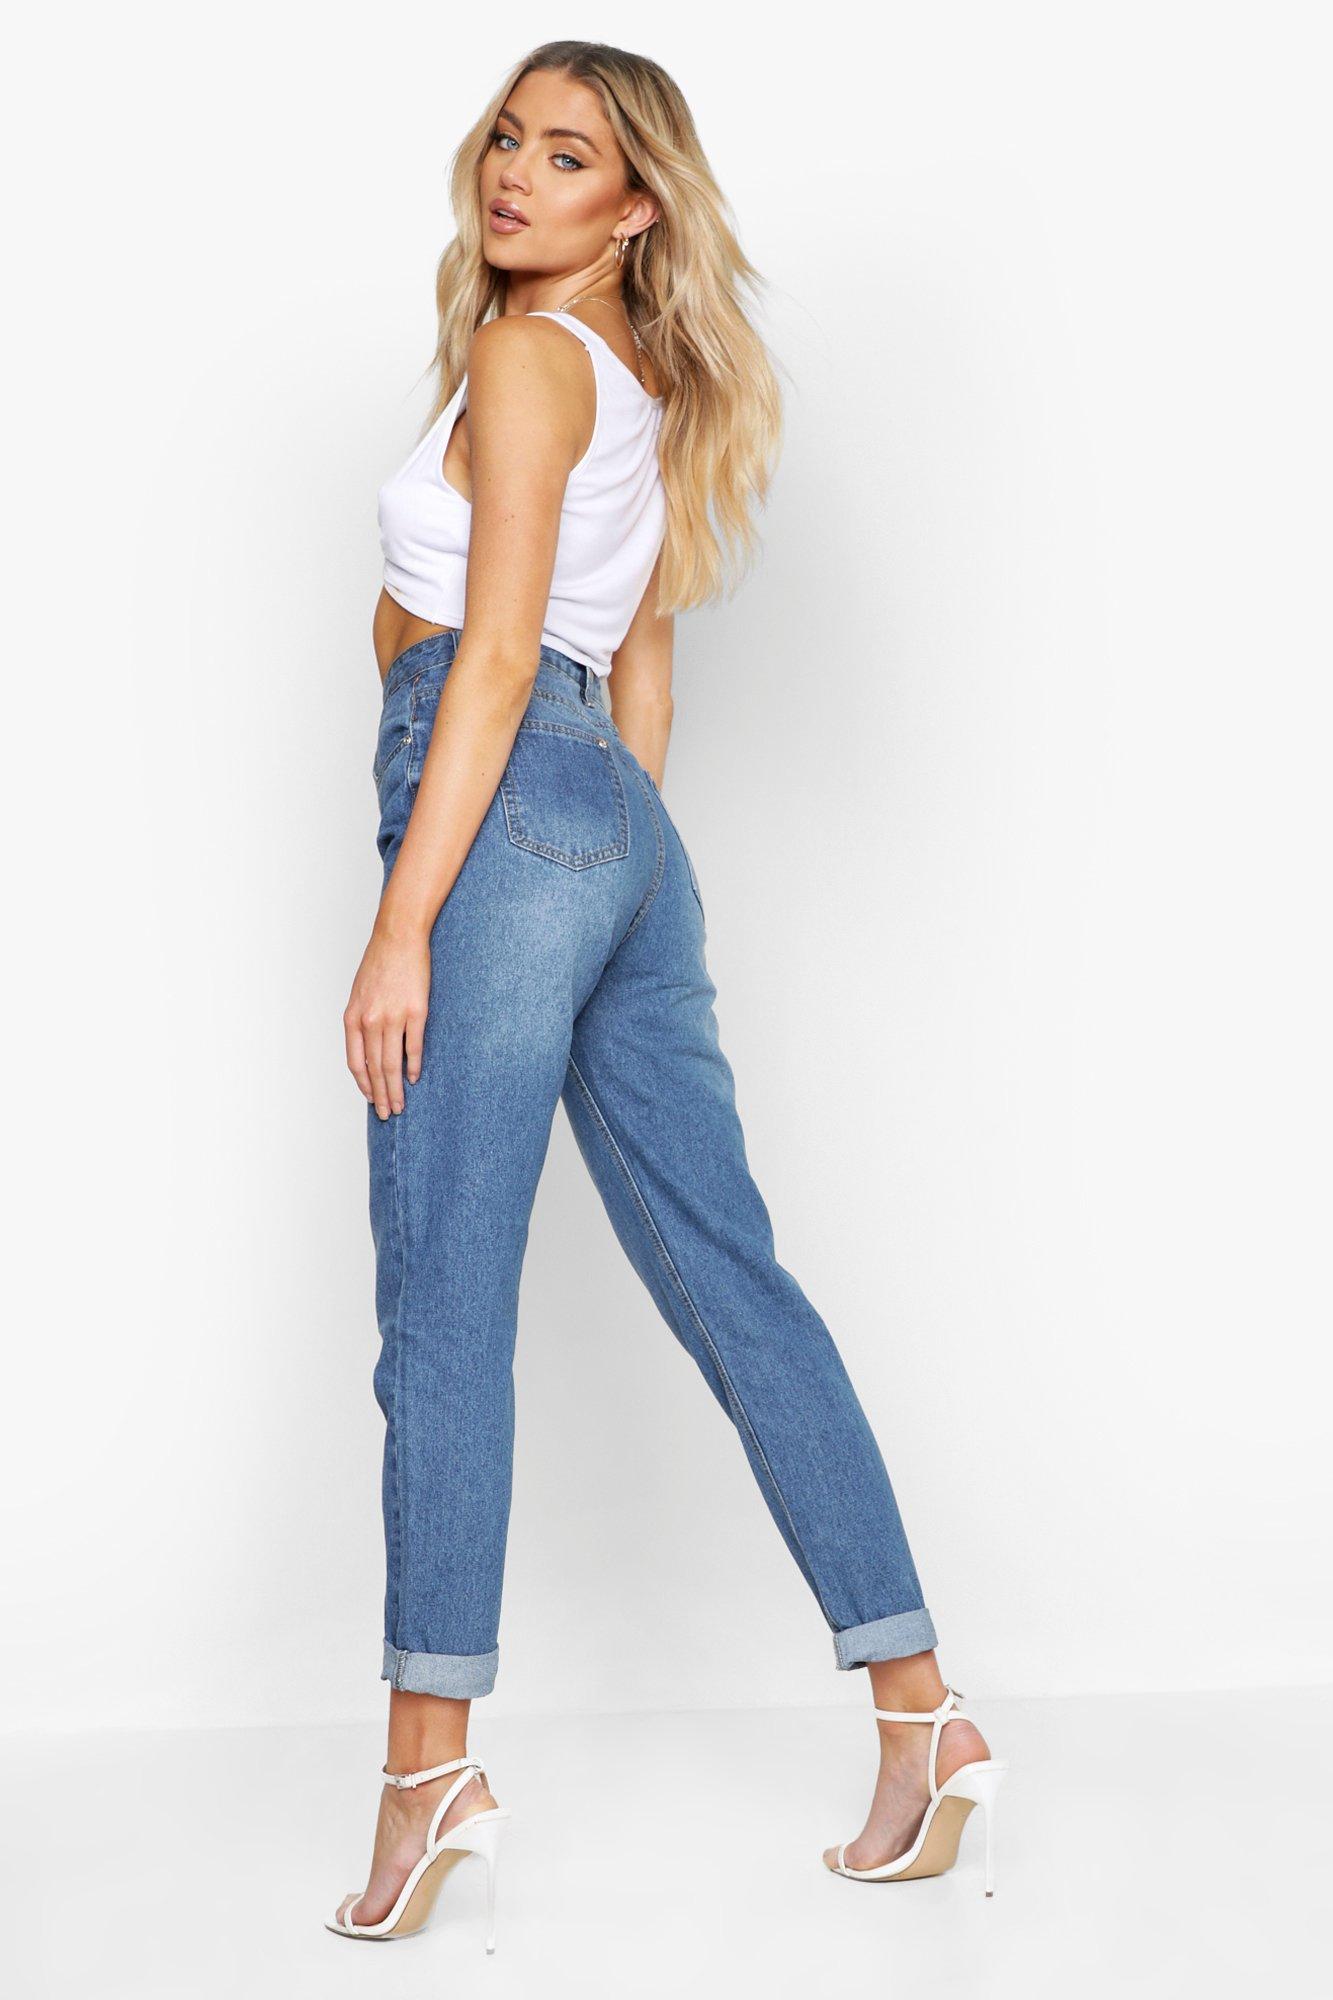 plus size jeans under $20